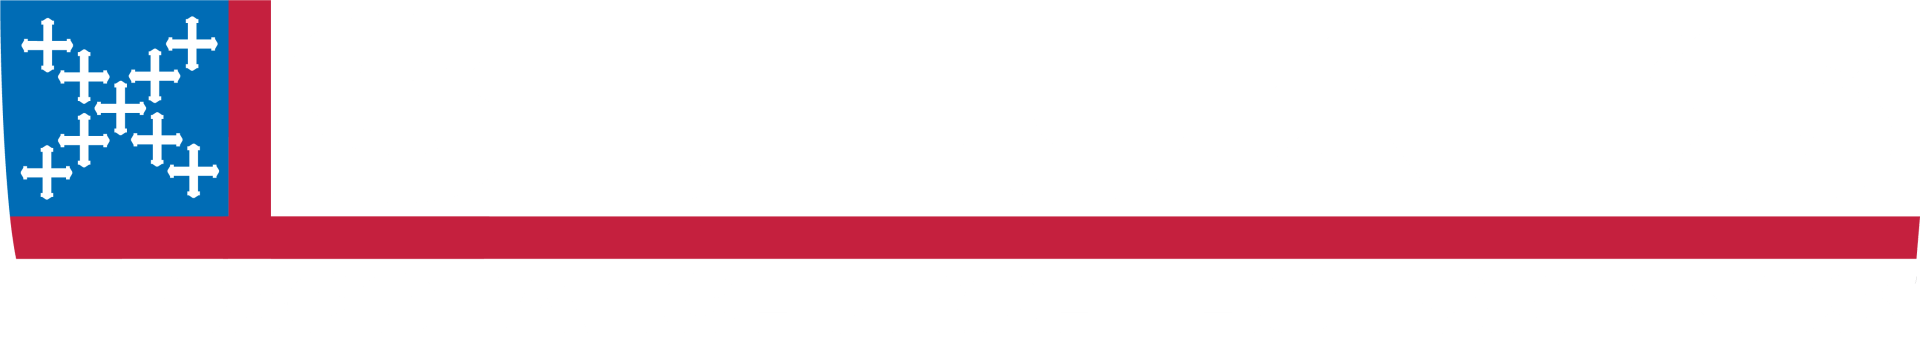 Logo for St. Luke's Episcopal Church in Hot Springs, AR